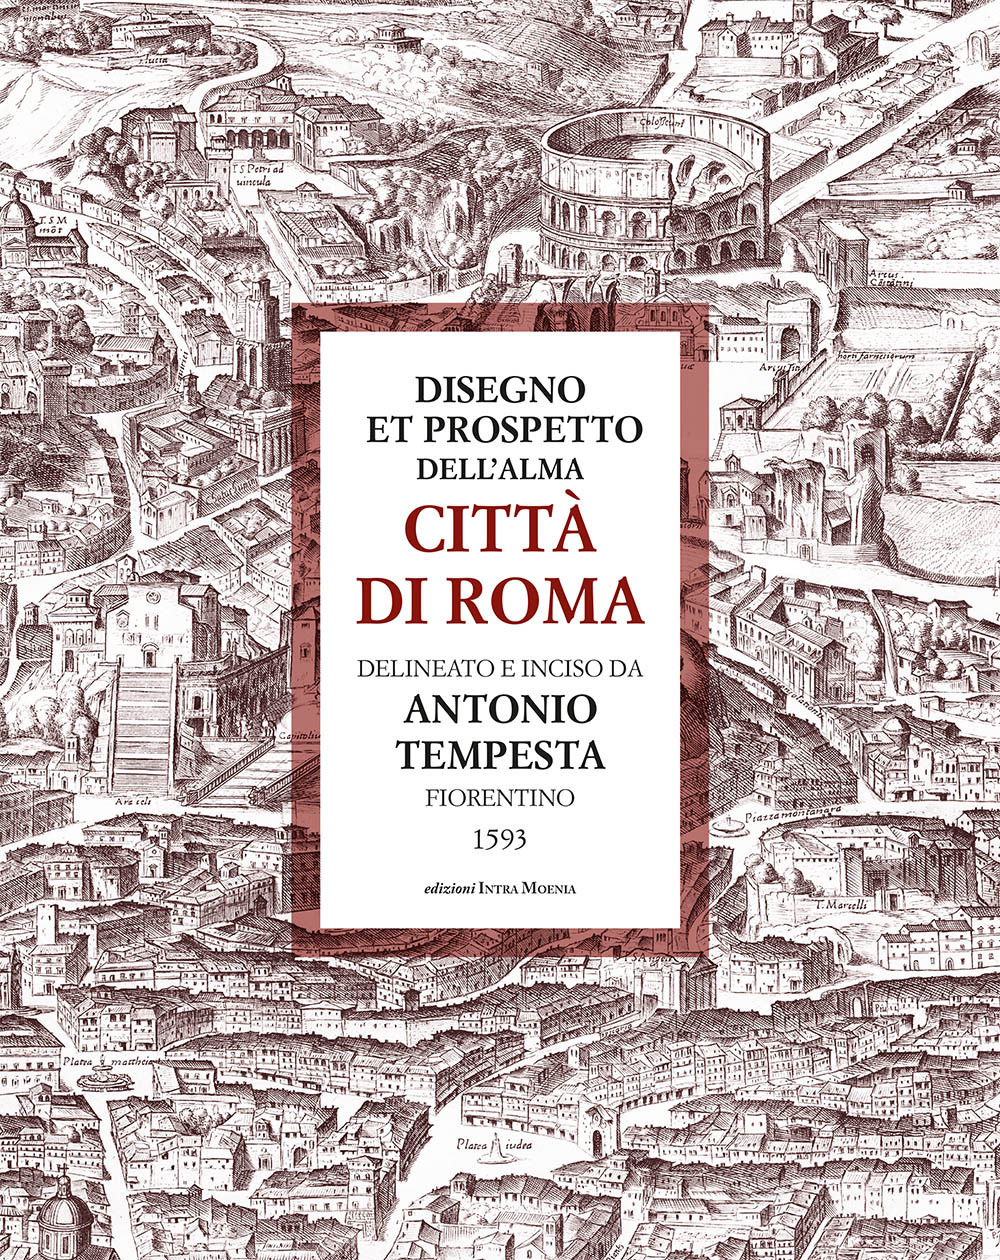 Disegno et prospetto dell'alma Città di Roma delineato e inciso da Antonio Tempesta